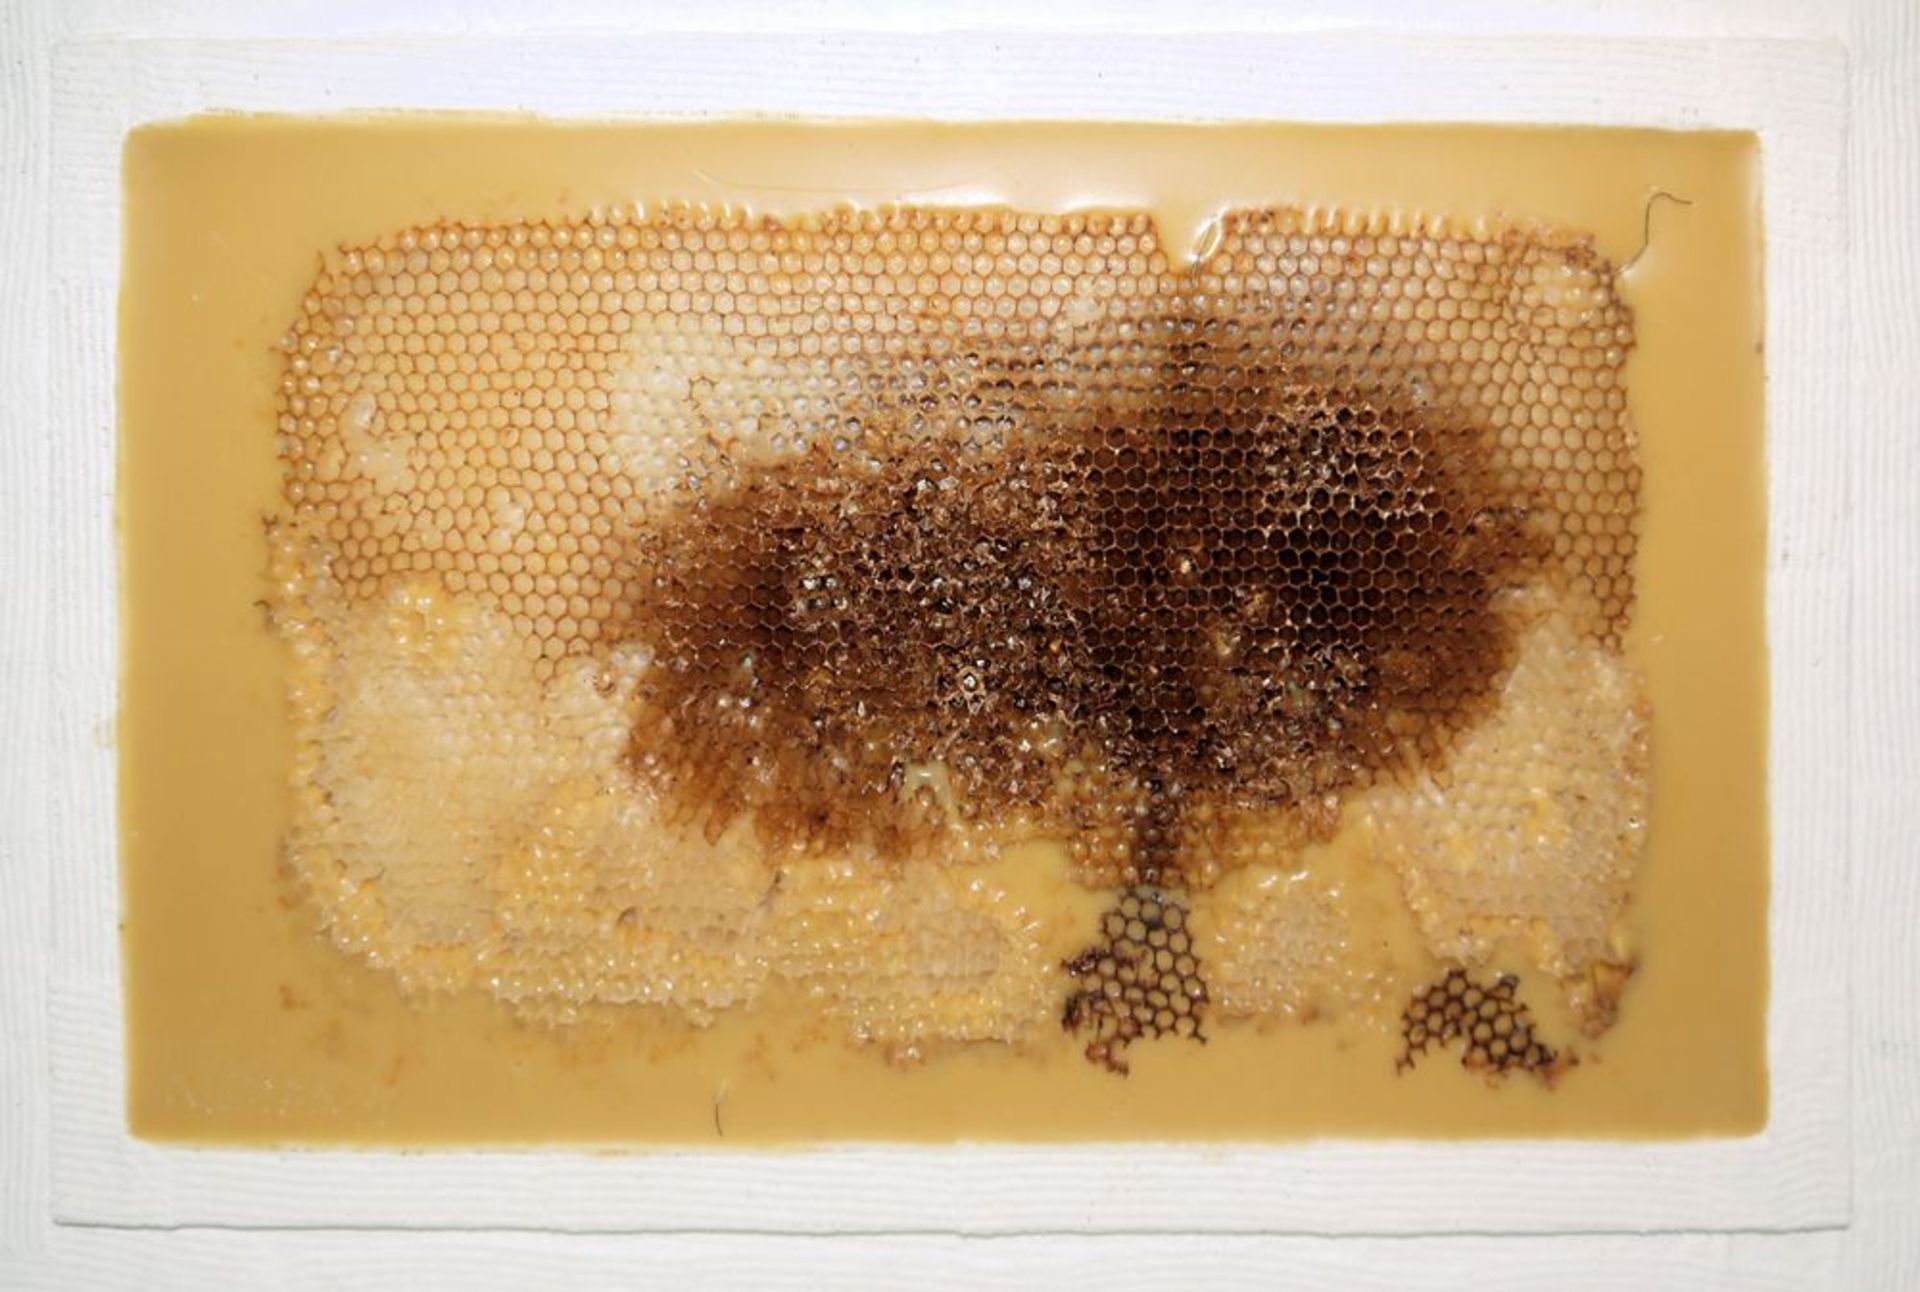 Johannes Metten, "Mutationen in Wachs", 2 signierte Wachs-Reliefs mit Bienenwaben von 1997 - Bild 5 aus 6